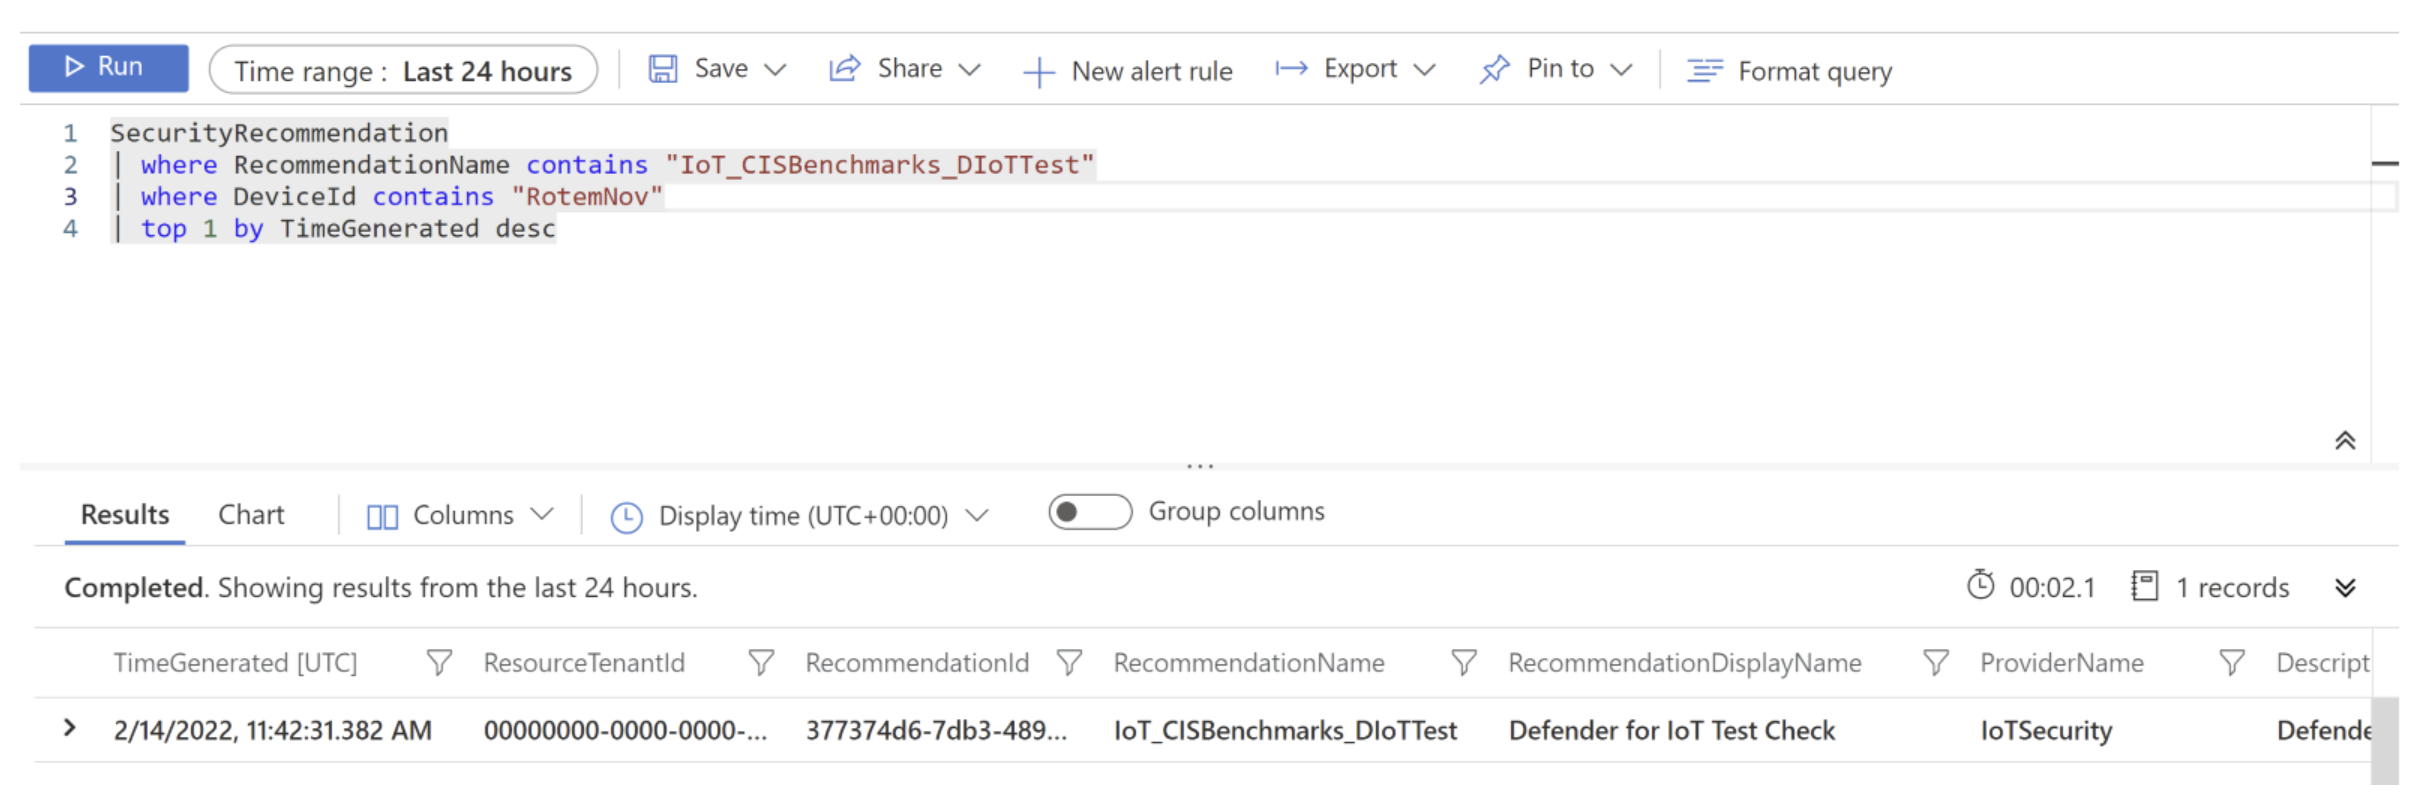 在 Log Analytics 中运行的 IoT_CISBenchmarks_DIoTTest 查询的屏幕截图。